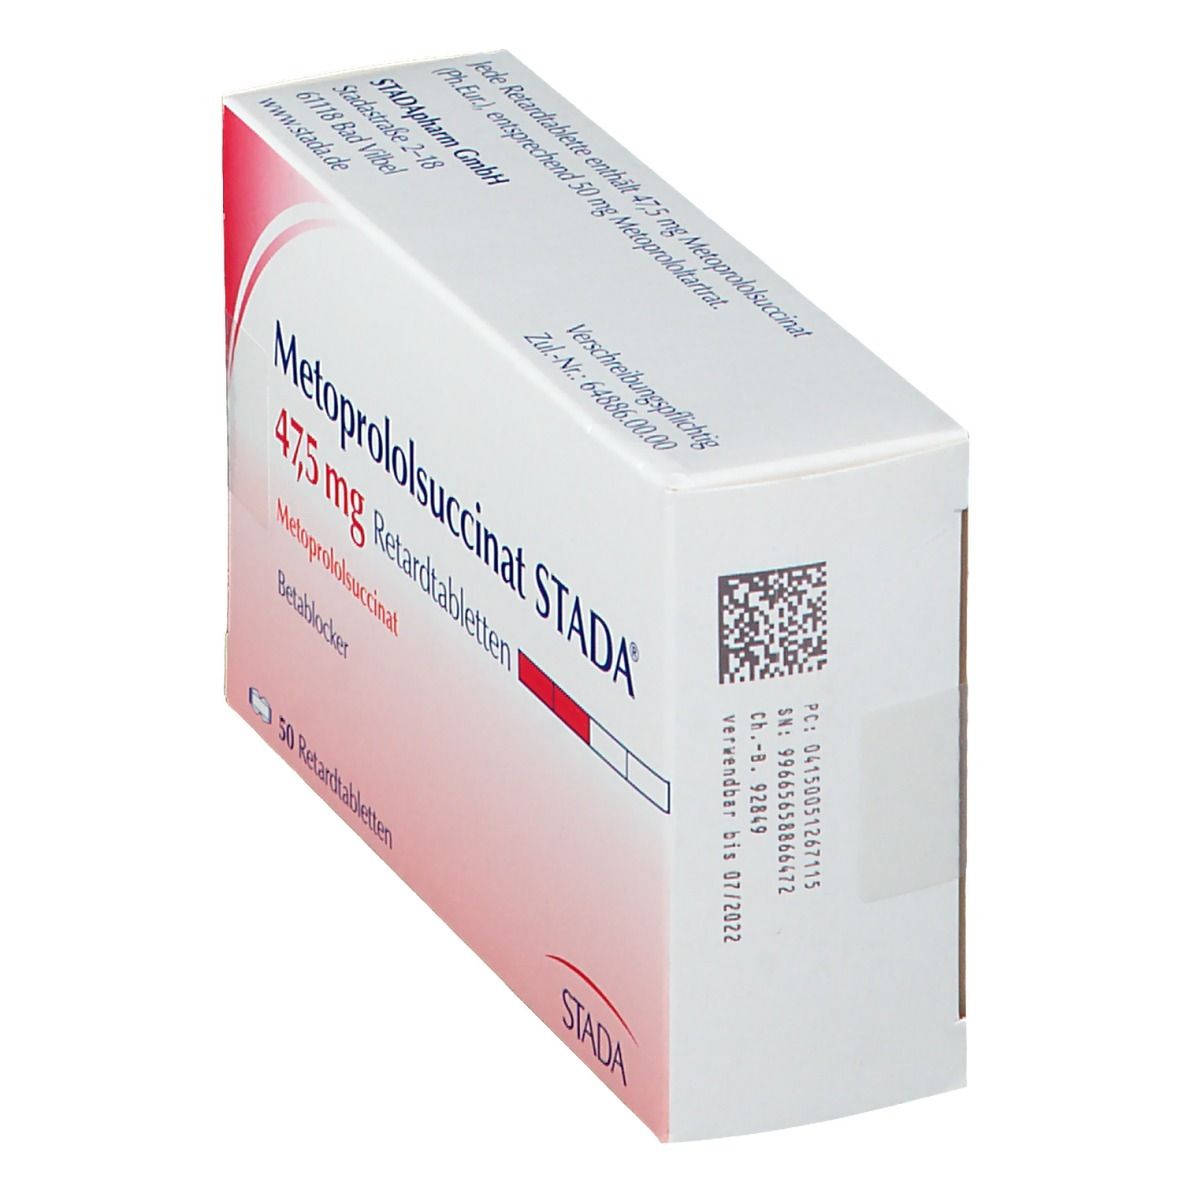 Metoprololsuccinat STADA® 47,5 mg Retardtabletten